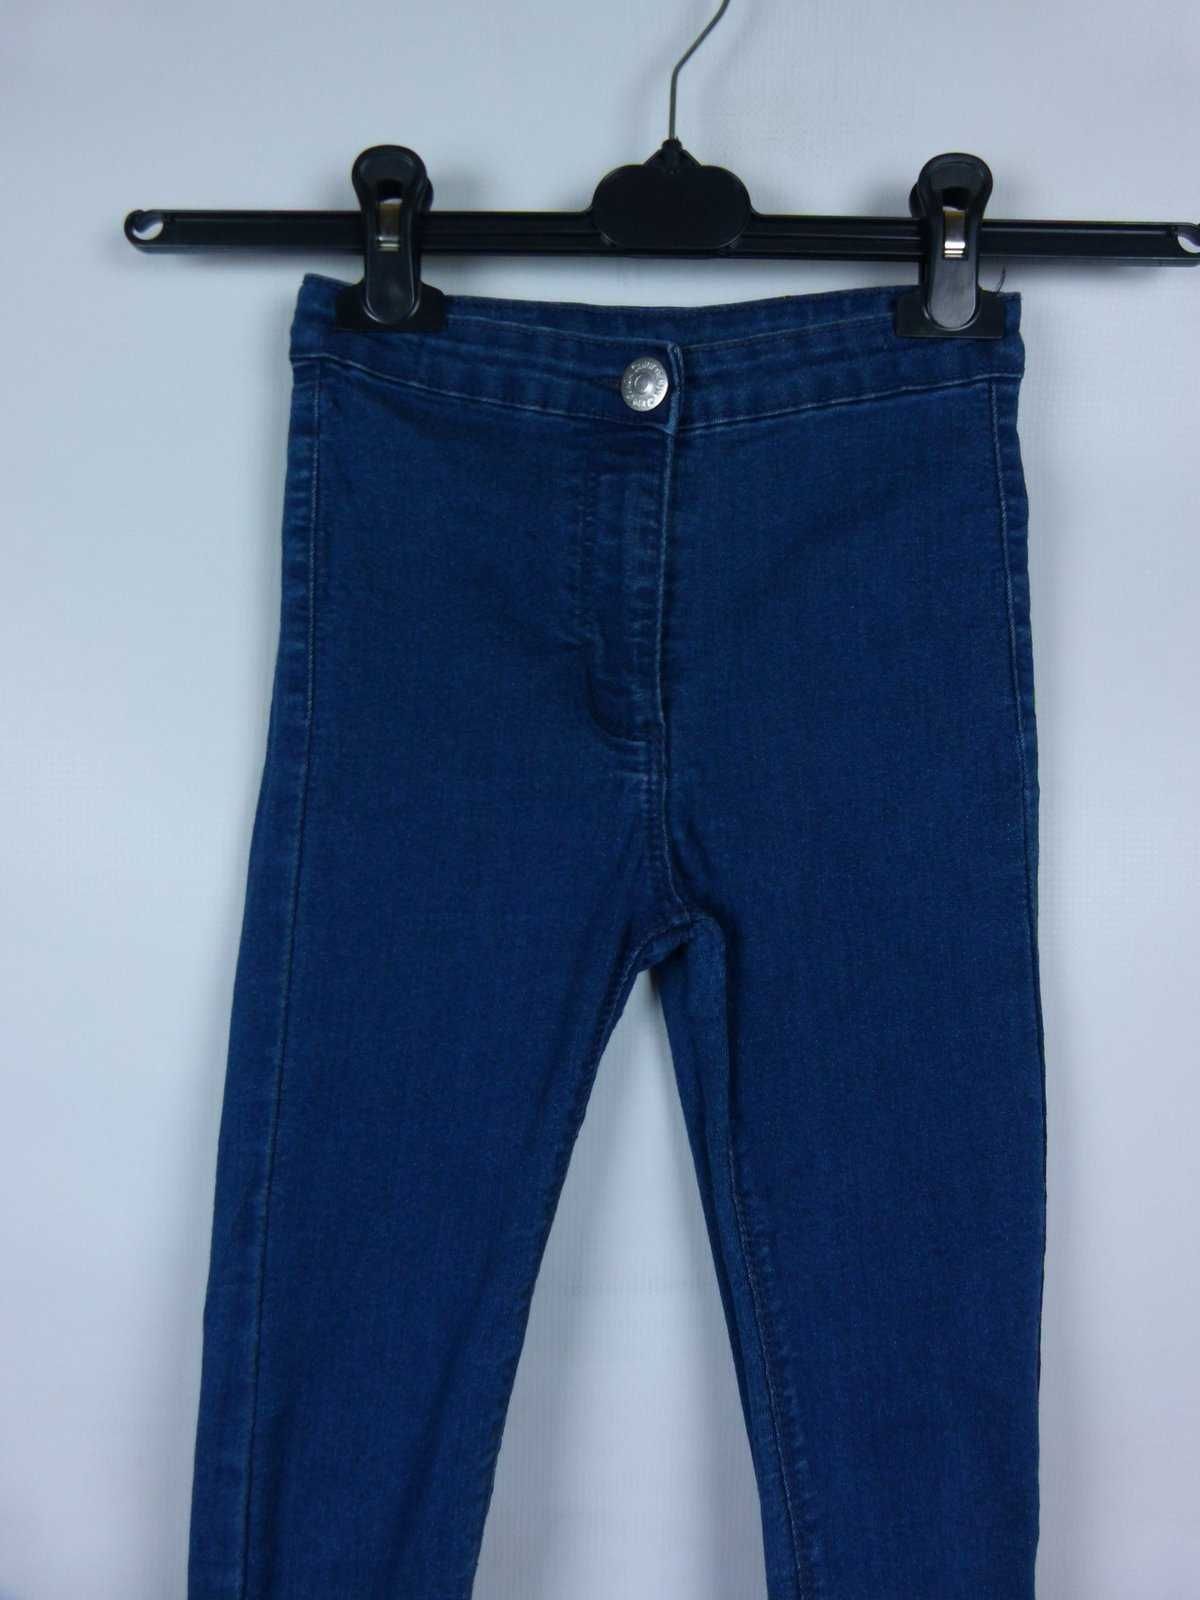 Matalan spodnie dżins rurki - 9 lat / 134 cm